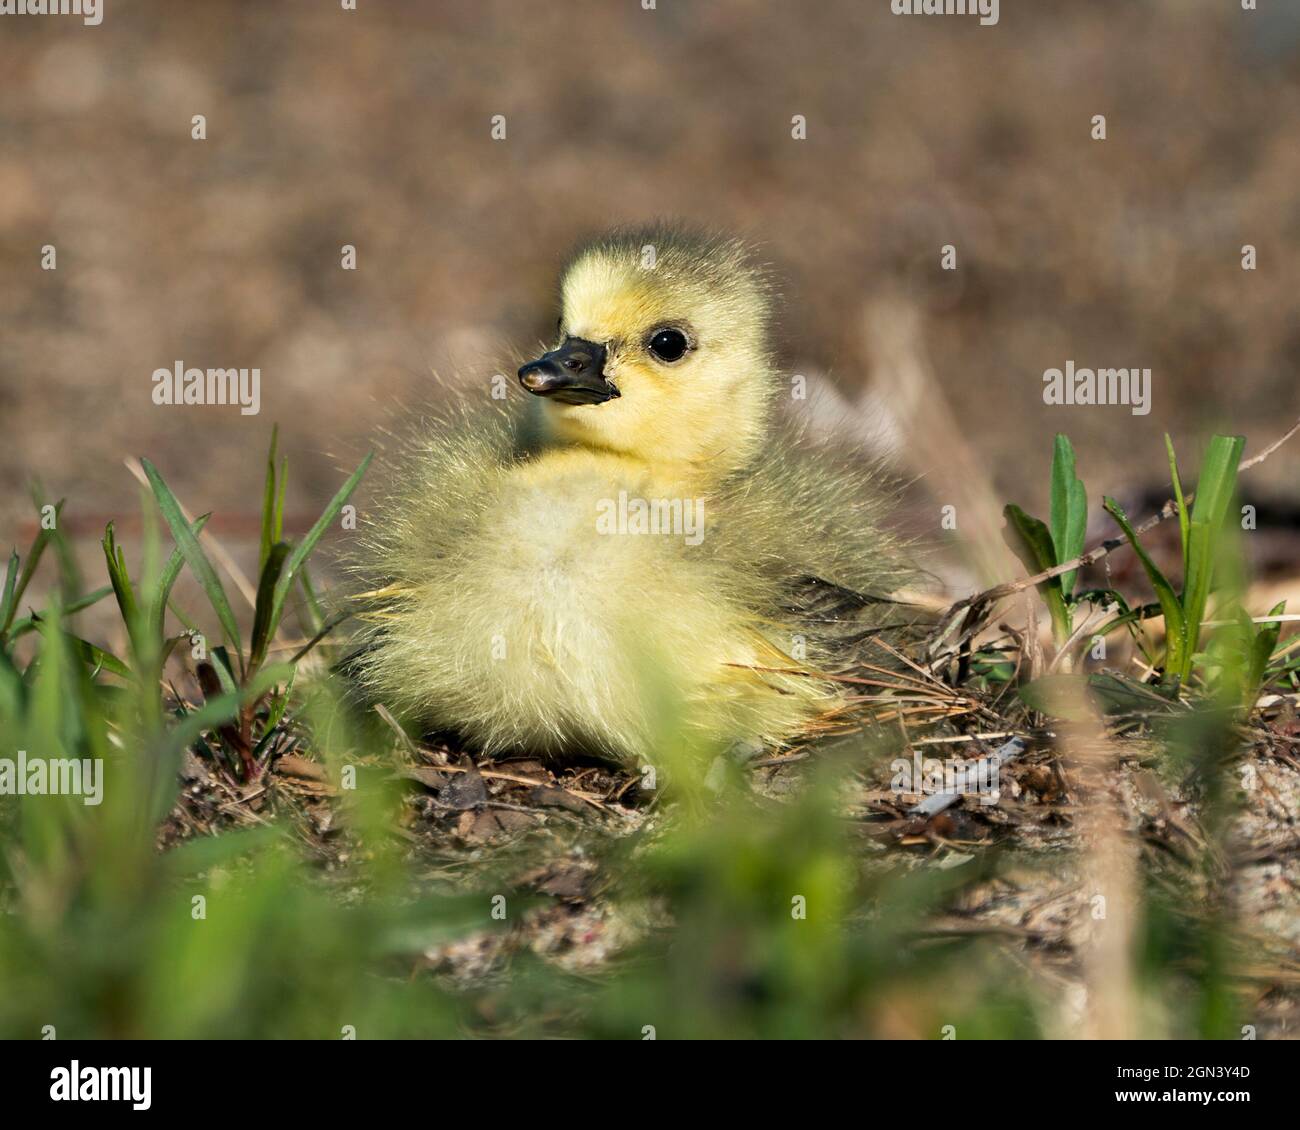 Canadian baby gosling primo piano profilo vista poggiare su erba nel suo ambiente e habitat. Immagine dell'oca del Canada. Immagine. Verticale. Foto. Foto Stock